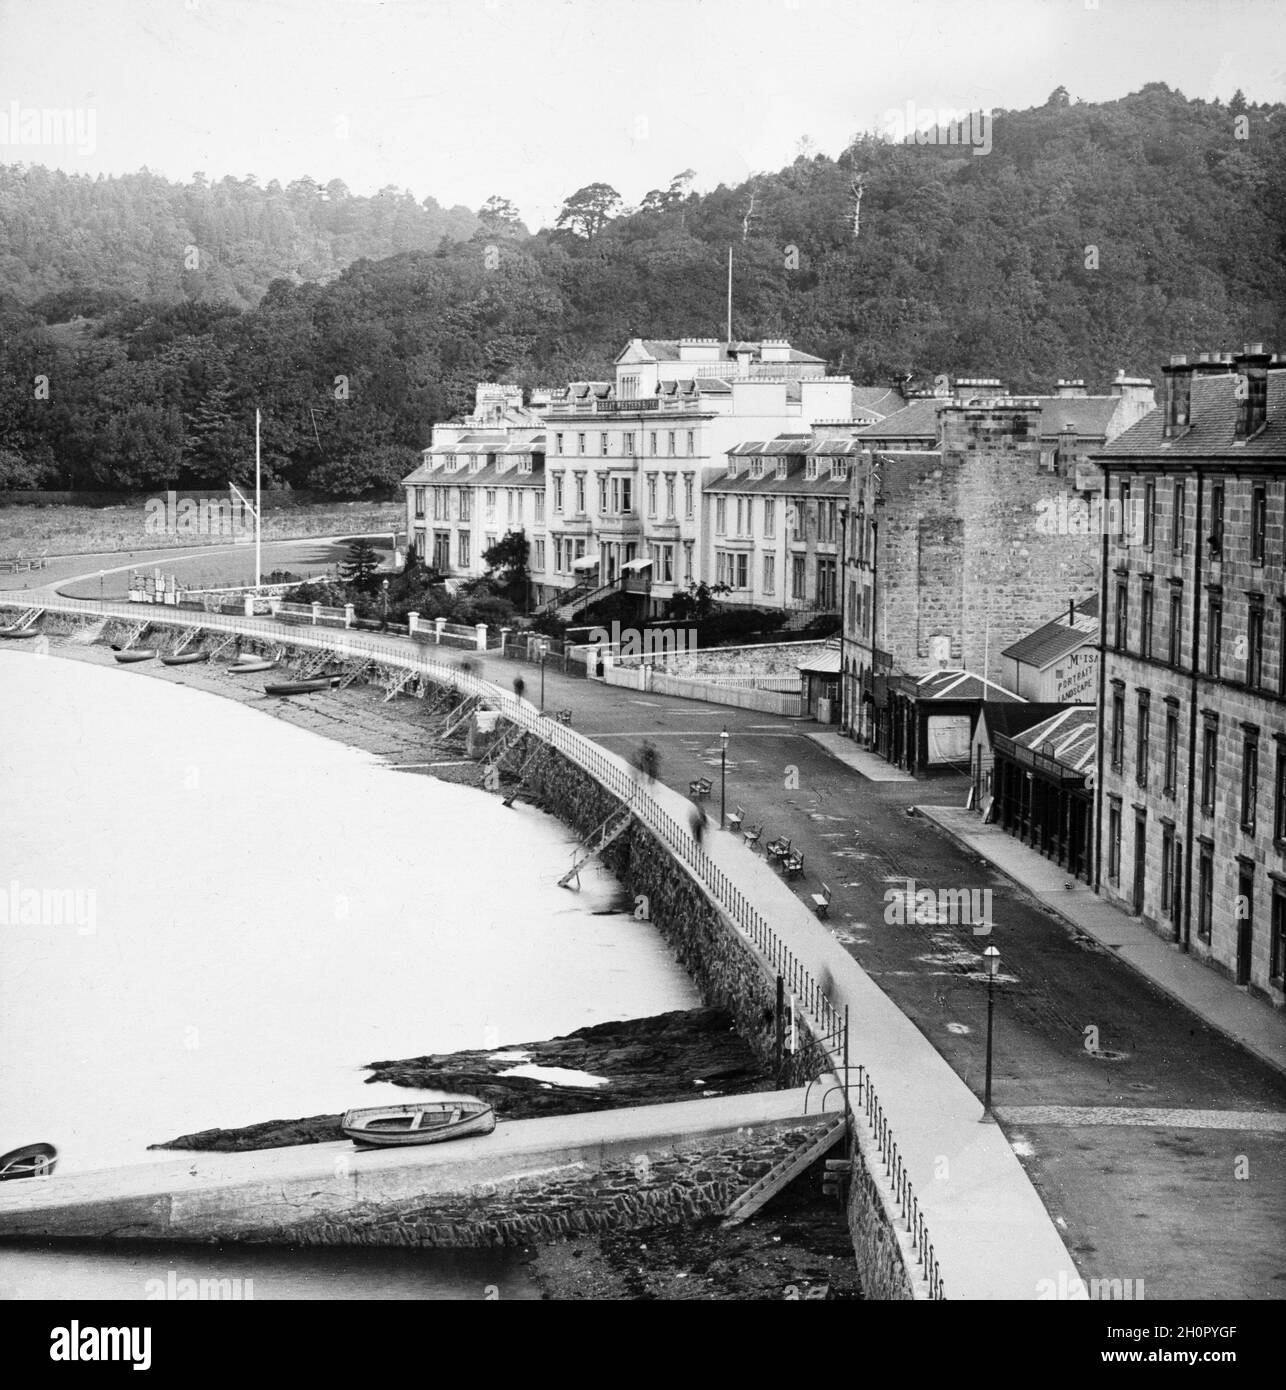 Vintage-Schwarz-Weiß-Foto aus dem späten viktorianischen Zeitalter von Oban in Schottland mit dem Great Western Hotel. Stockfoto